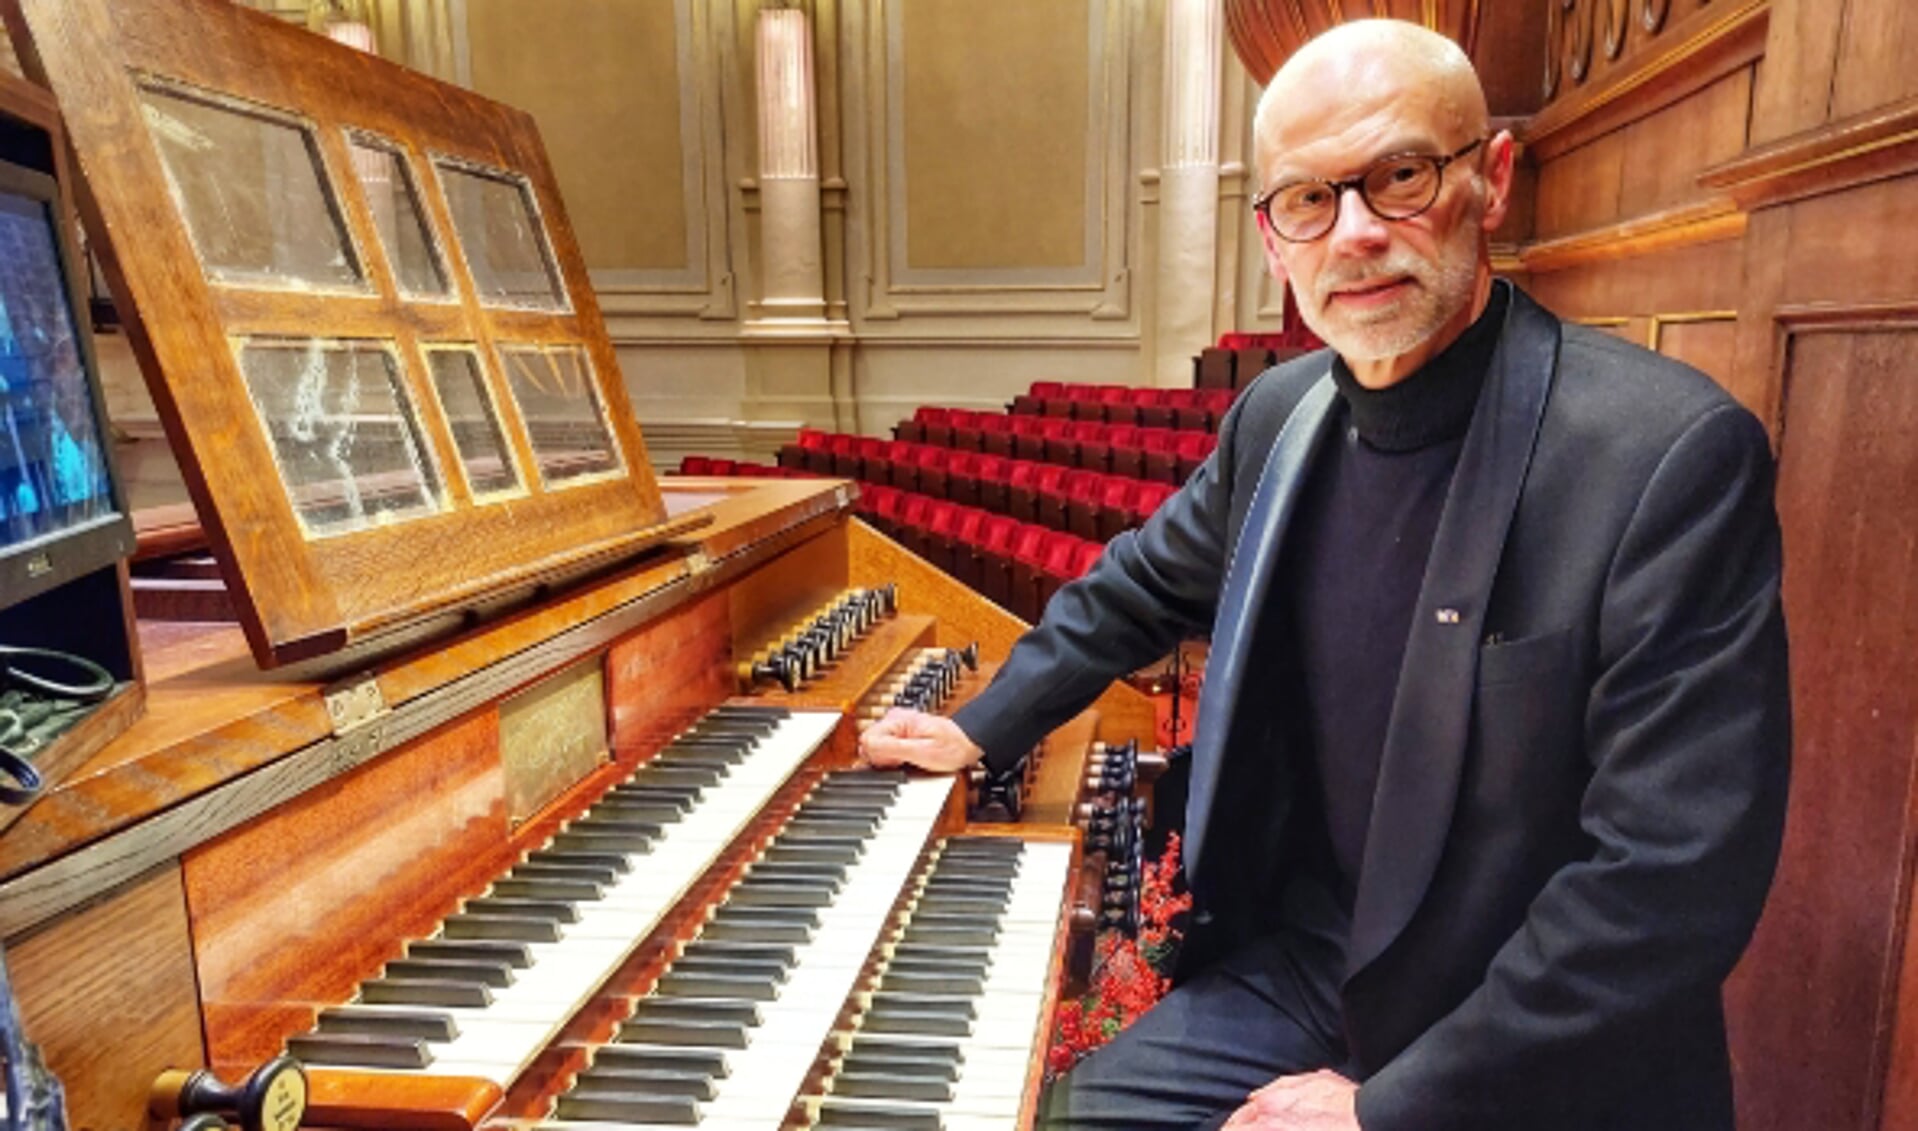 Weinig organisten hebben zo’n eigen manier van concerten geven als Arjan Breukhoven. Hij is in binnen- en buitenland zeer gewaardeerd!